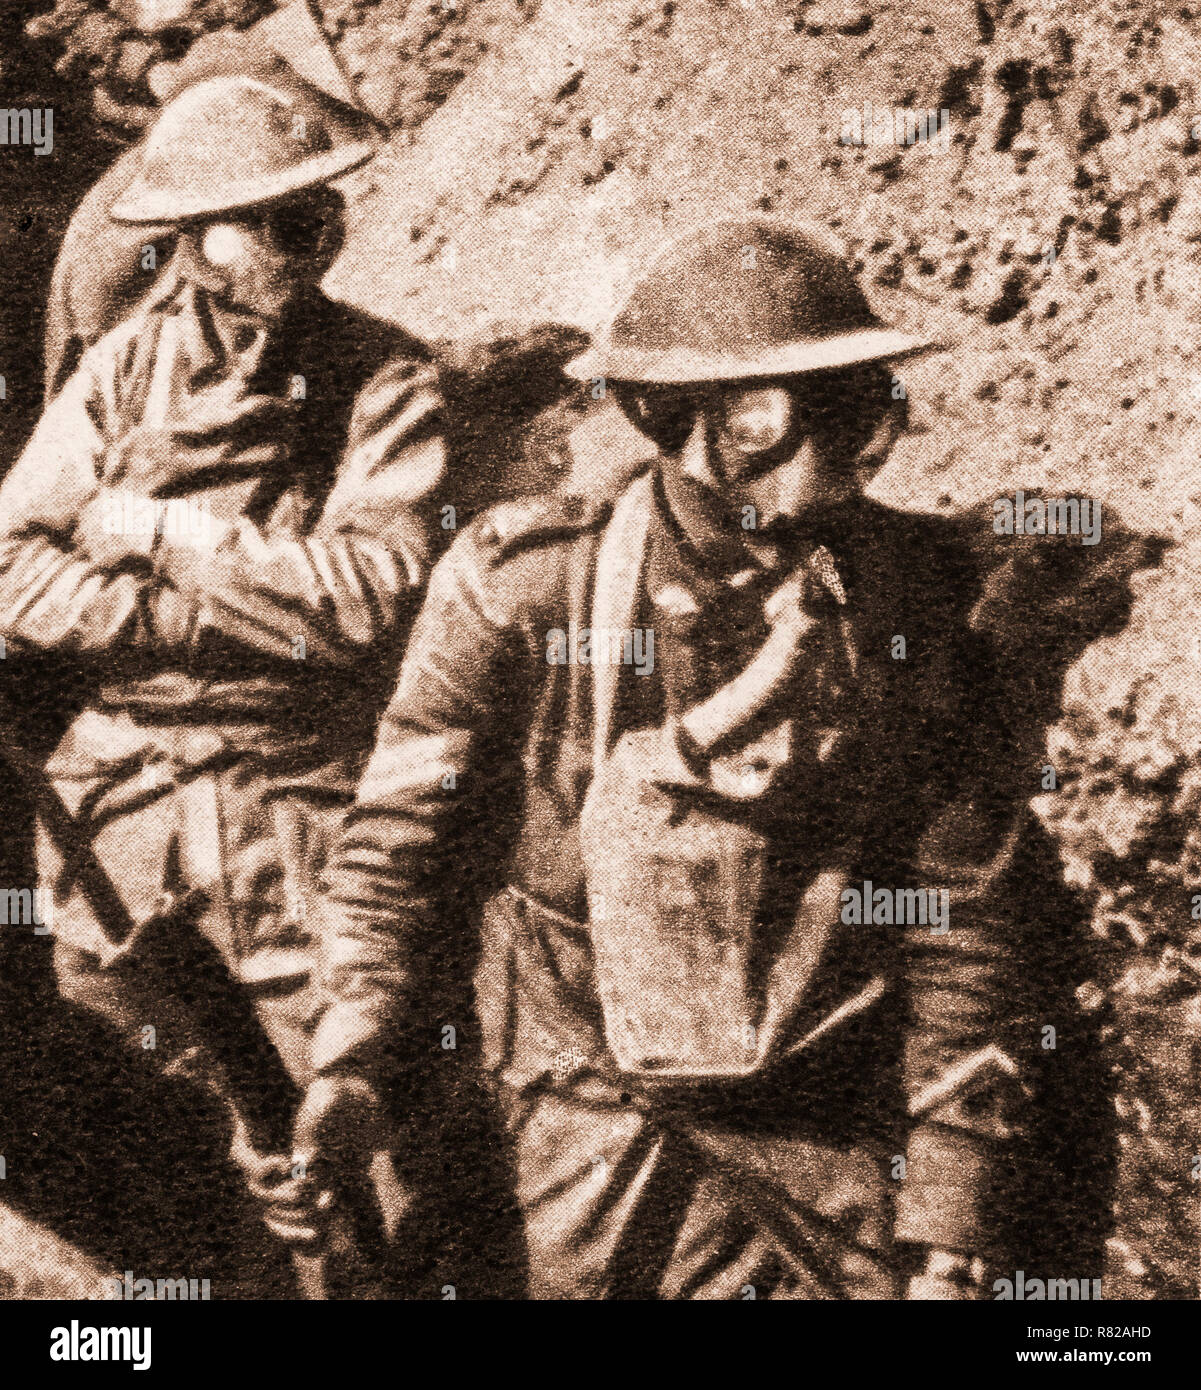 Britische Soldaten mit Gasmasken nach dem Gebrauch von vergifteten Gas zuerst im April 1915 verwendet. Entweder Chlor oder Senfgas wurde aus den Zylindern in eine dichte Wolke freigesetzt oder in Tanks feuerte eine regelmäßige offensive Waffe auf beiden Seiten des Konfliktes zu werden. Stockfoto